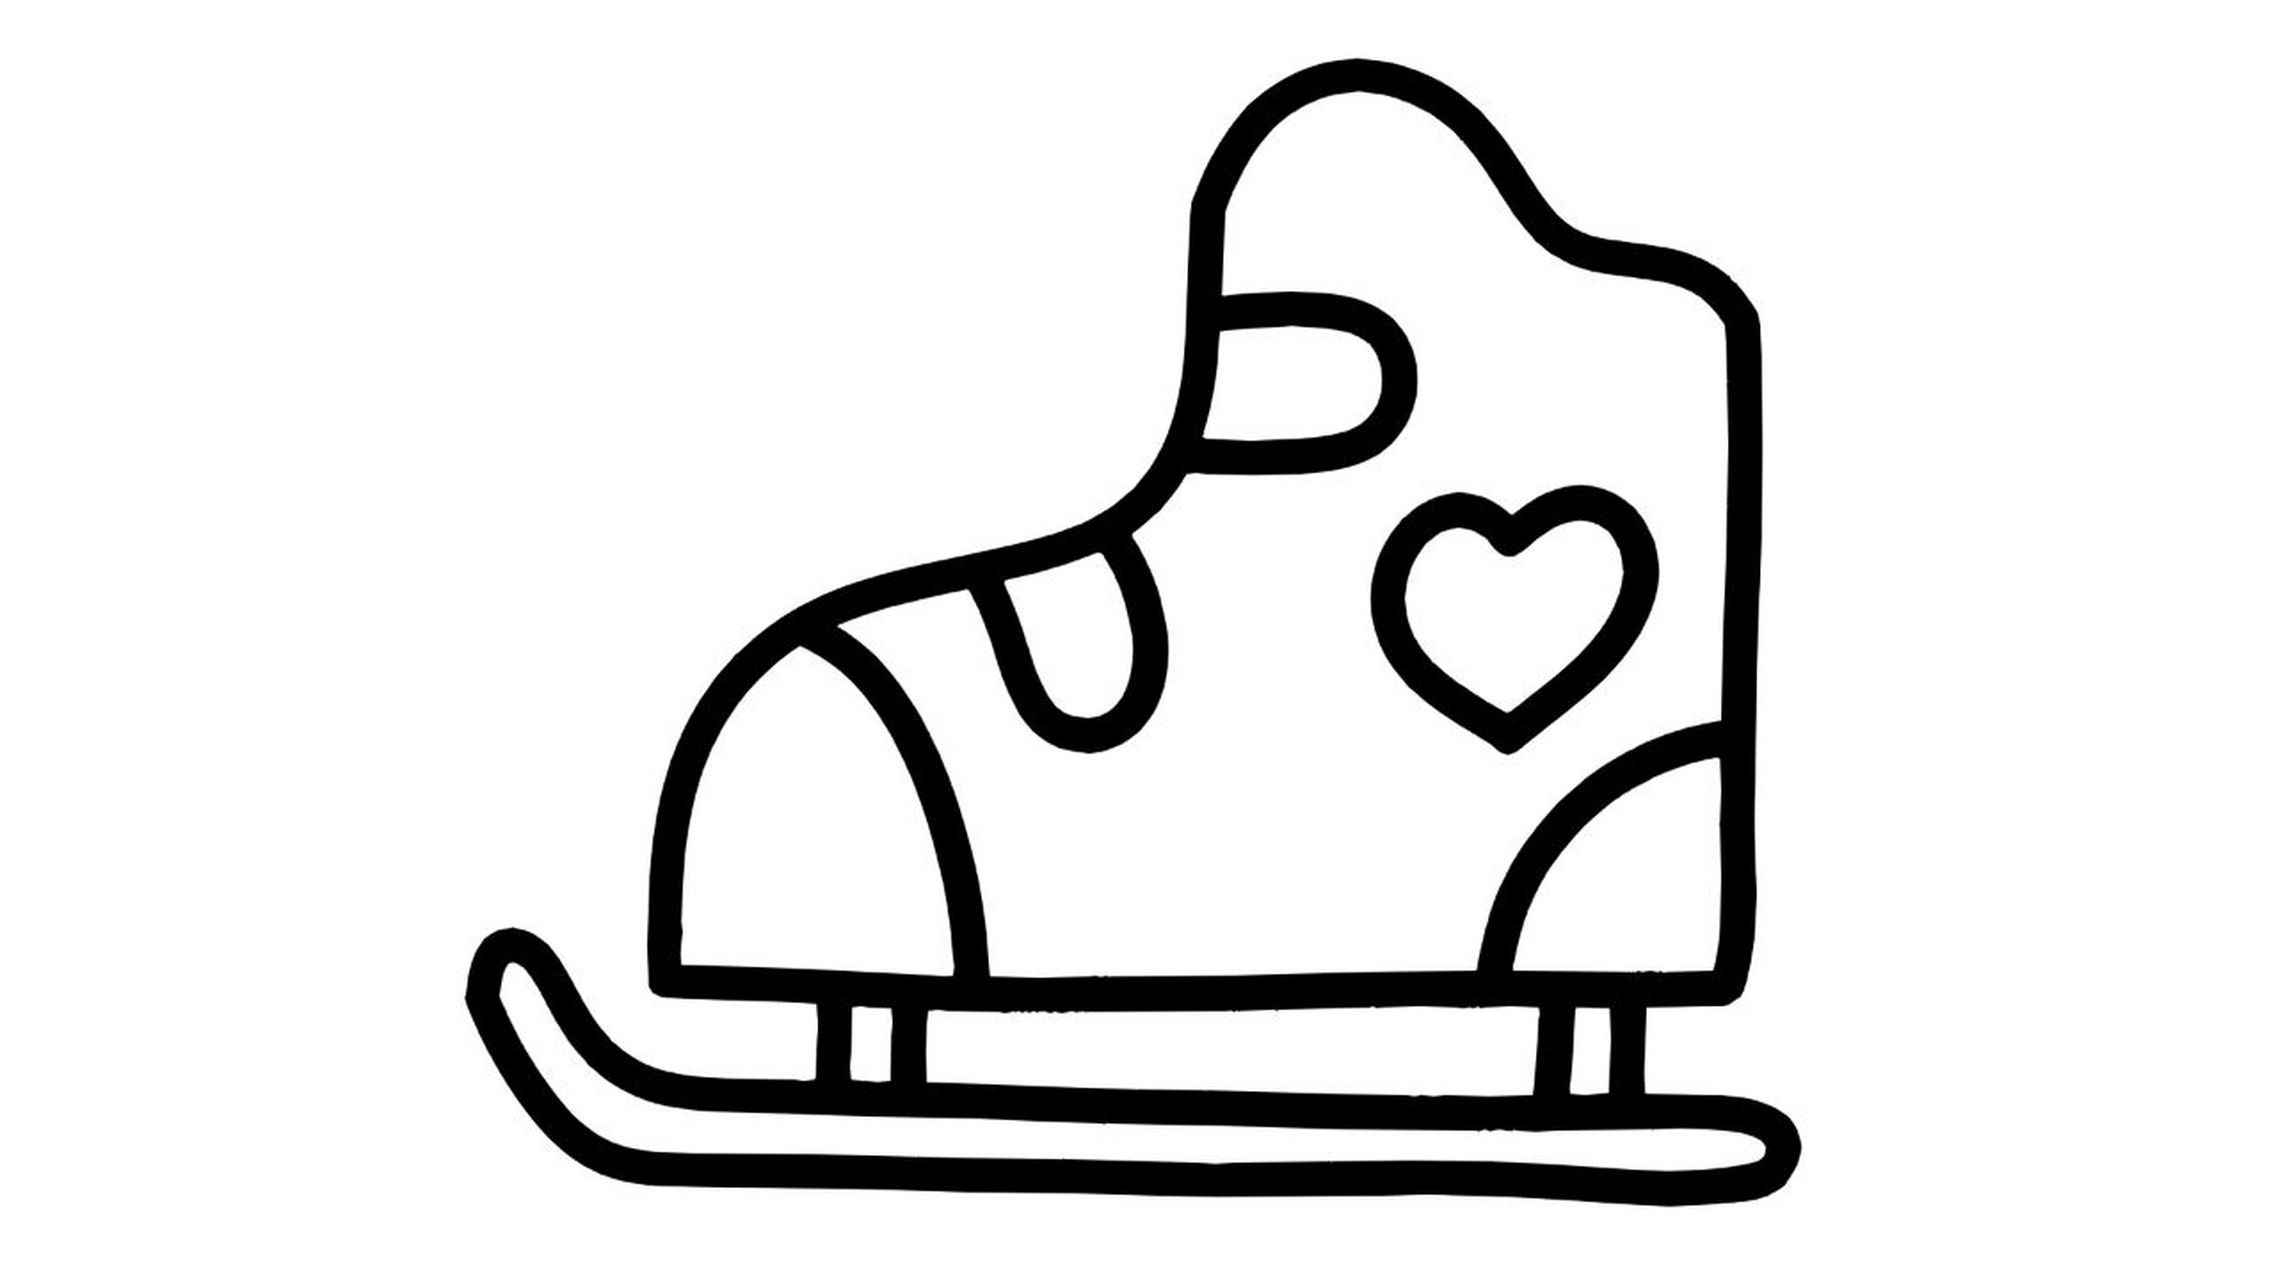 简笔画溜冰鞋图片